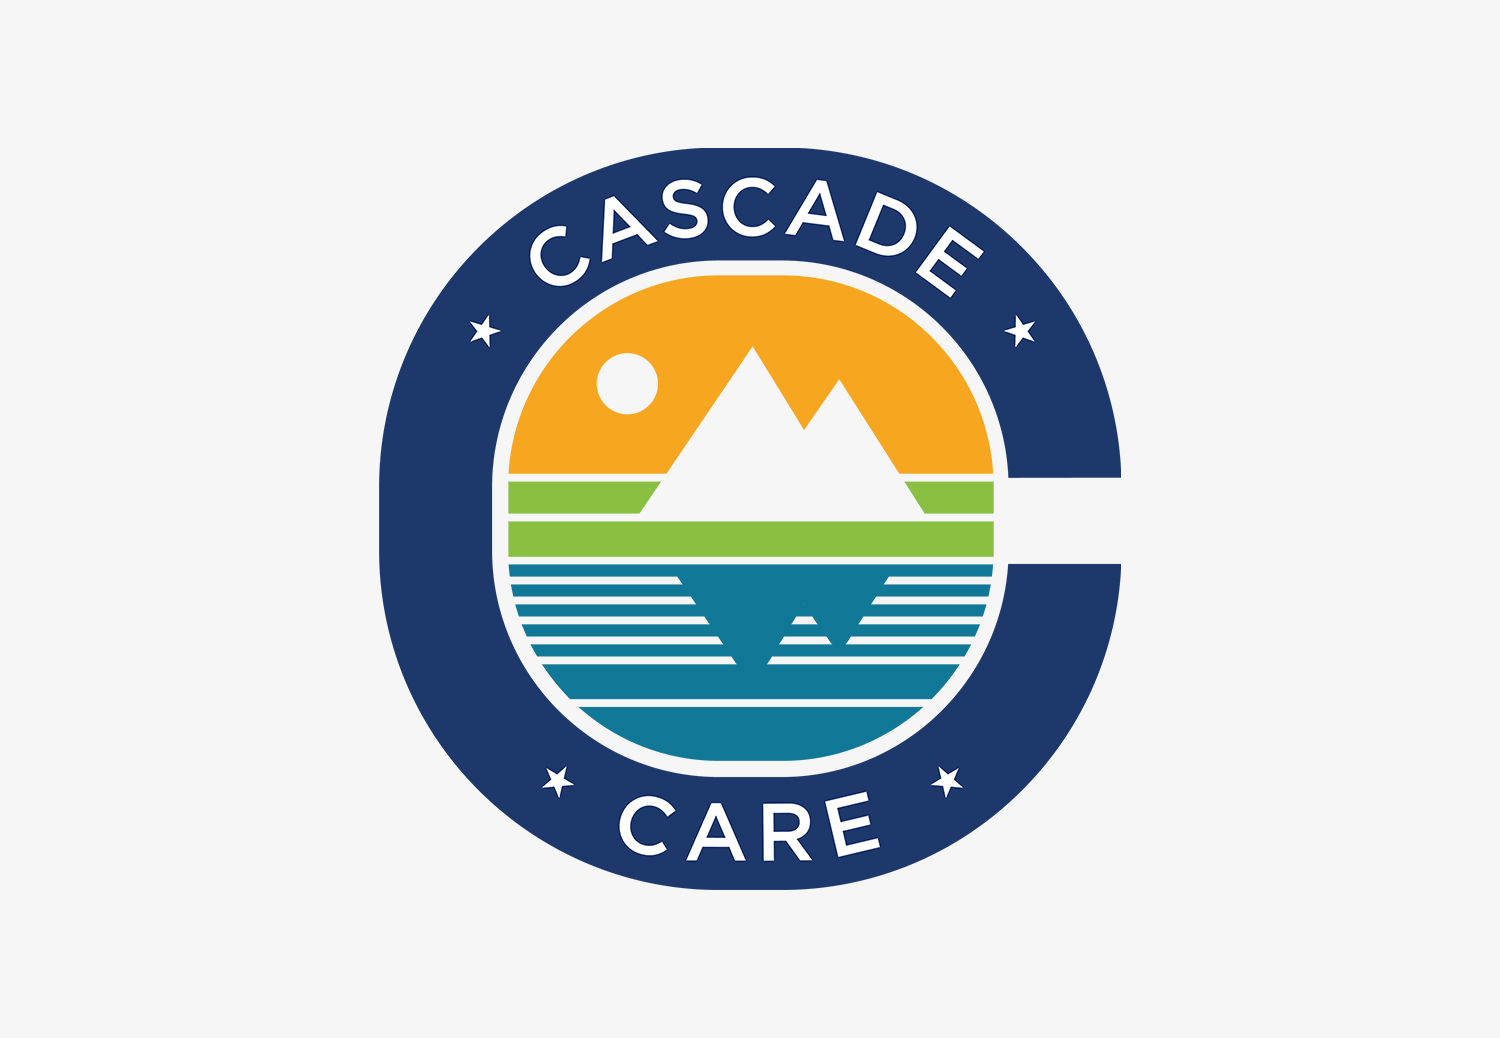 Cascade Care 